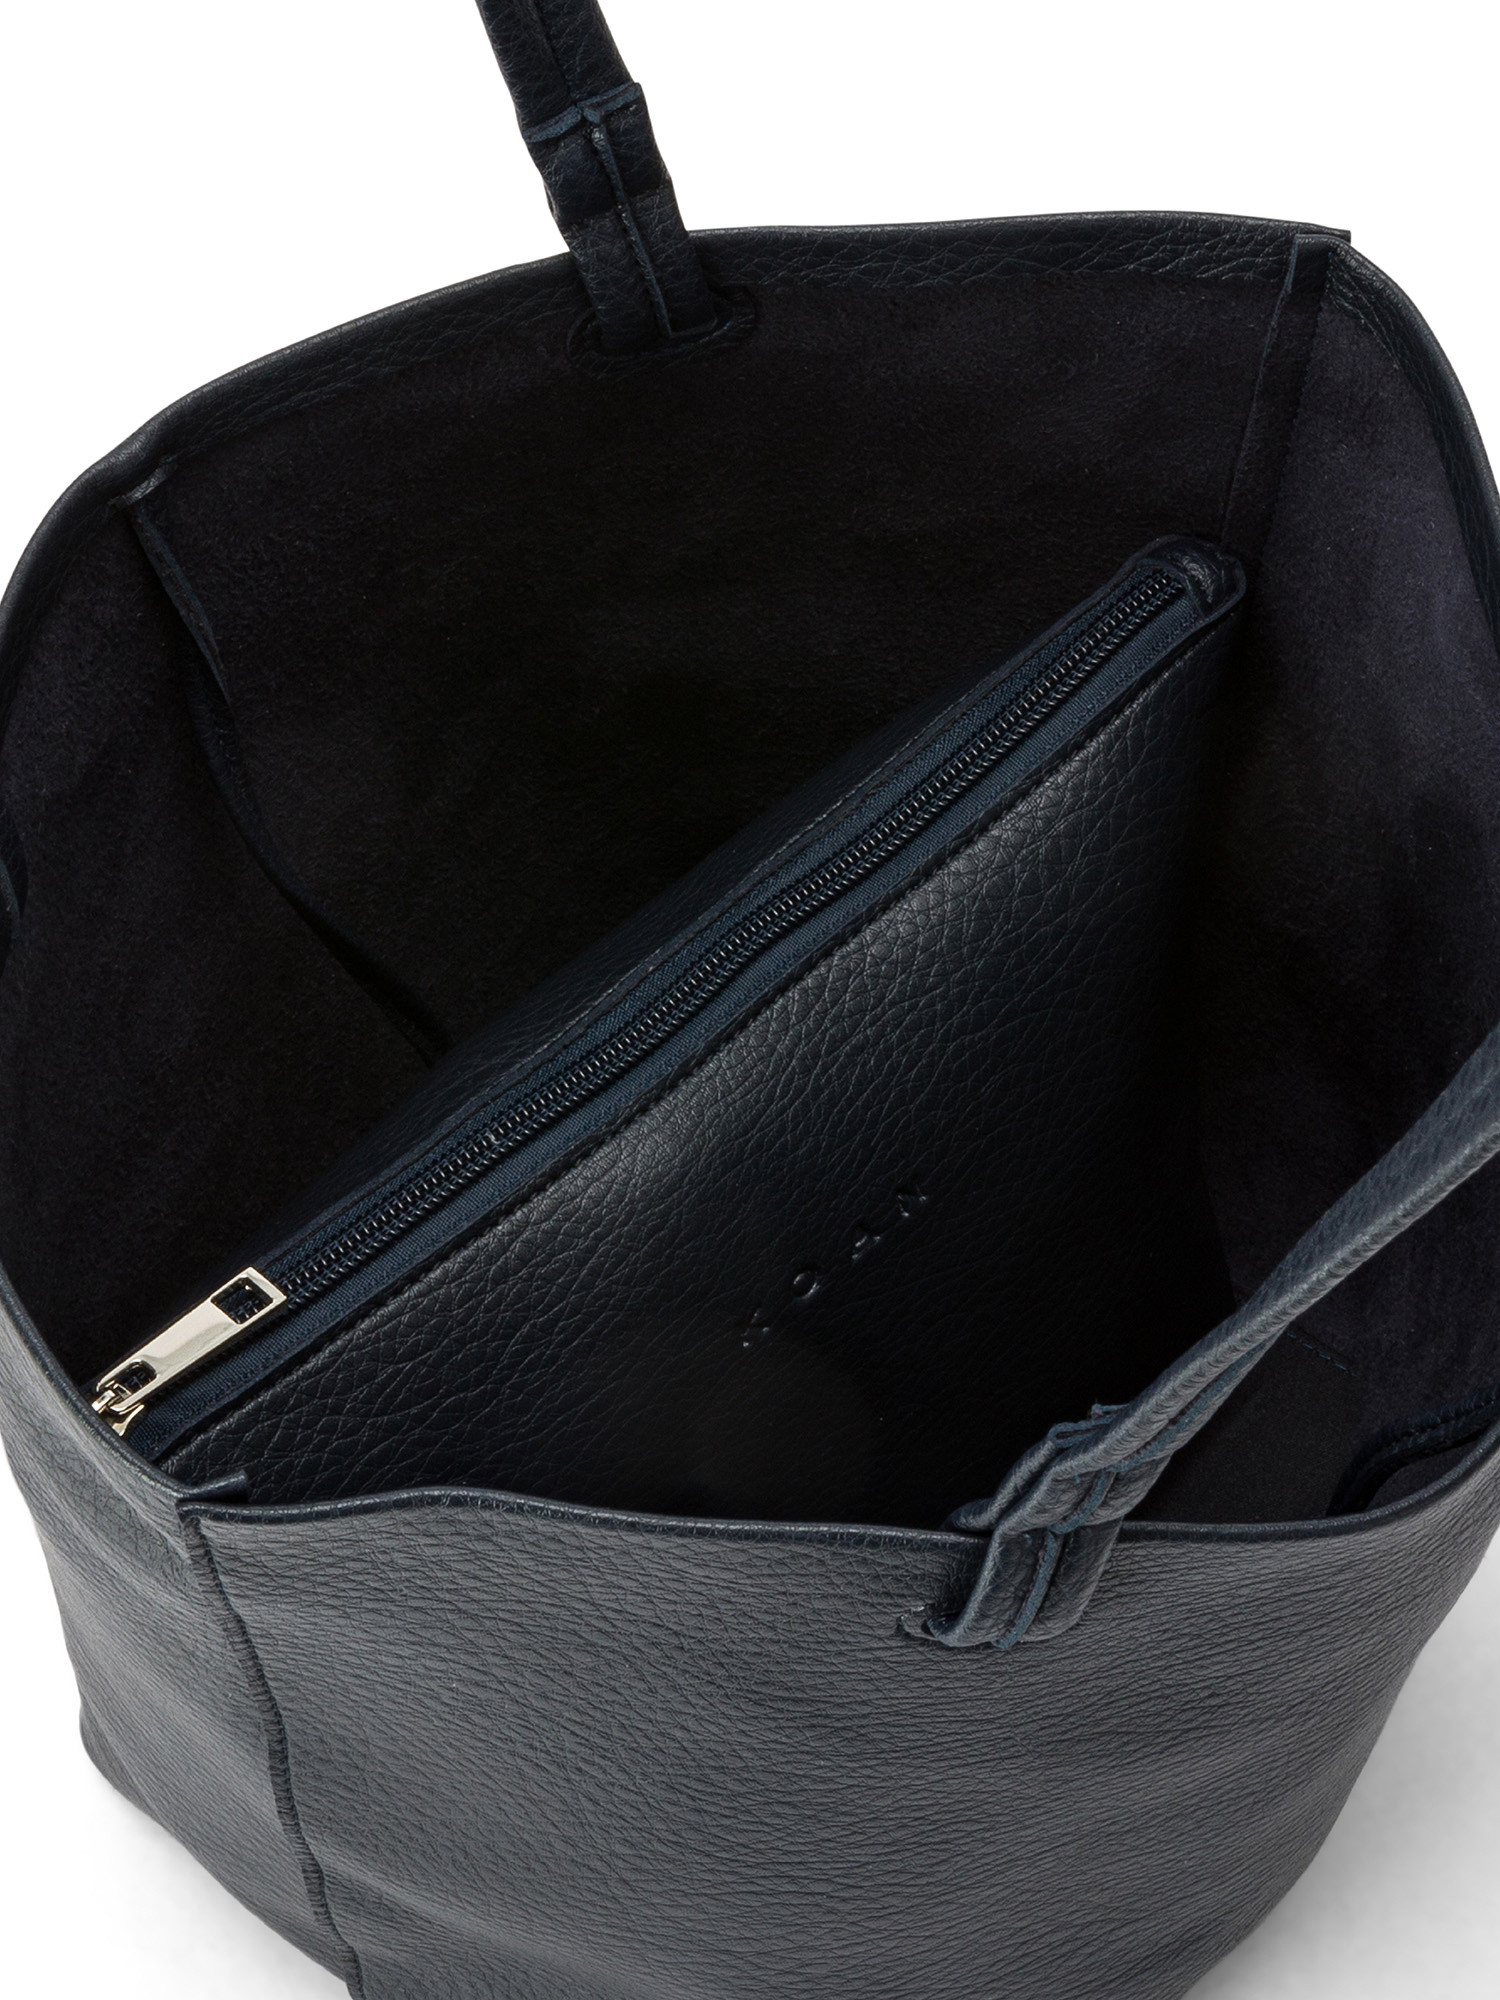 Koan - Shopping bag, Dark Blue, large image number 2